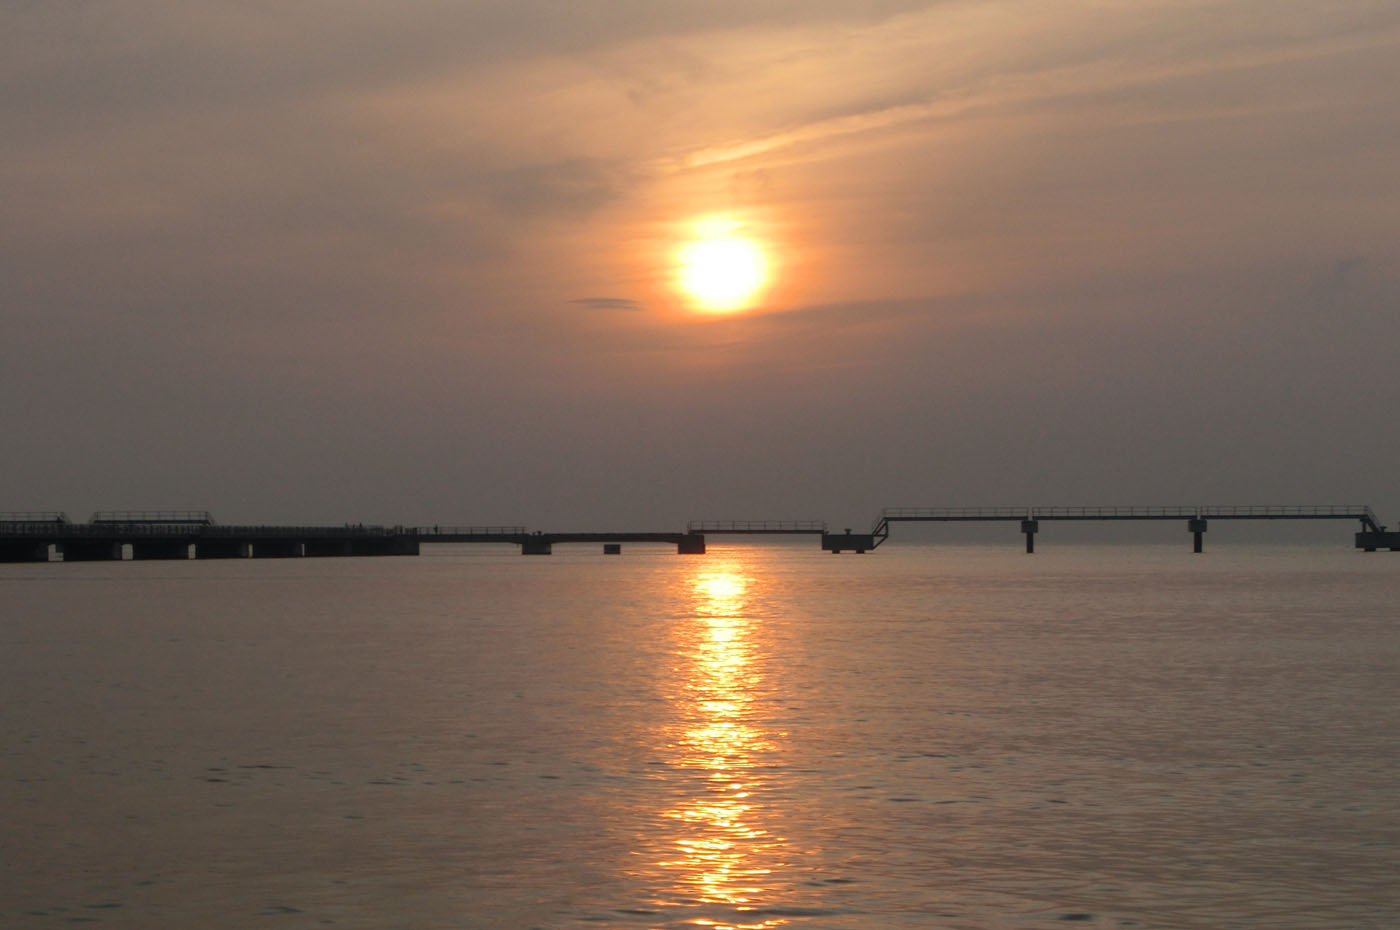 館山夕日桟橋から見た夕日の画像